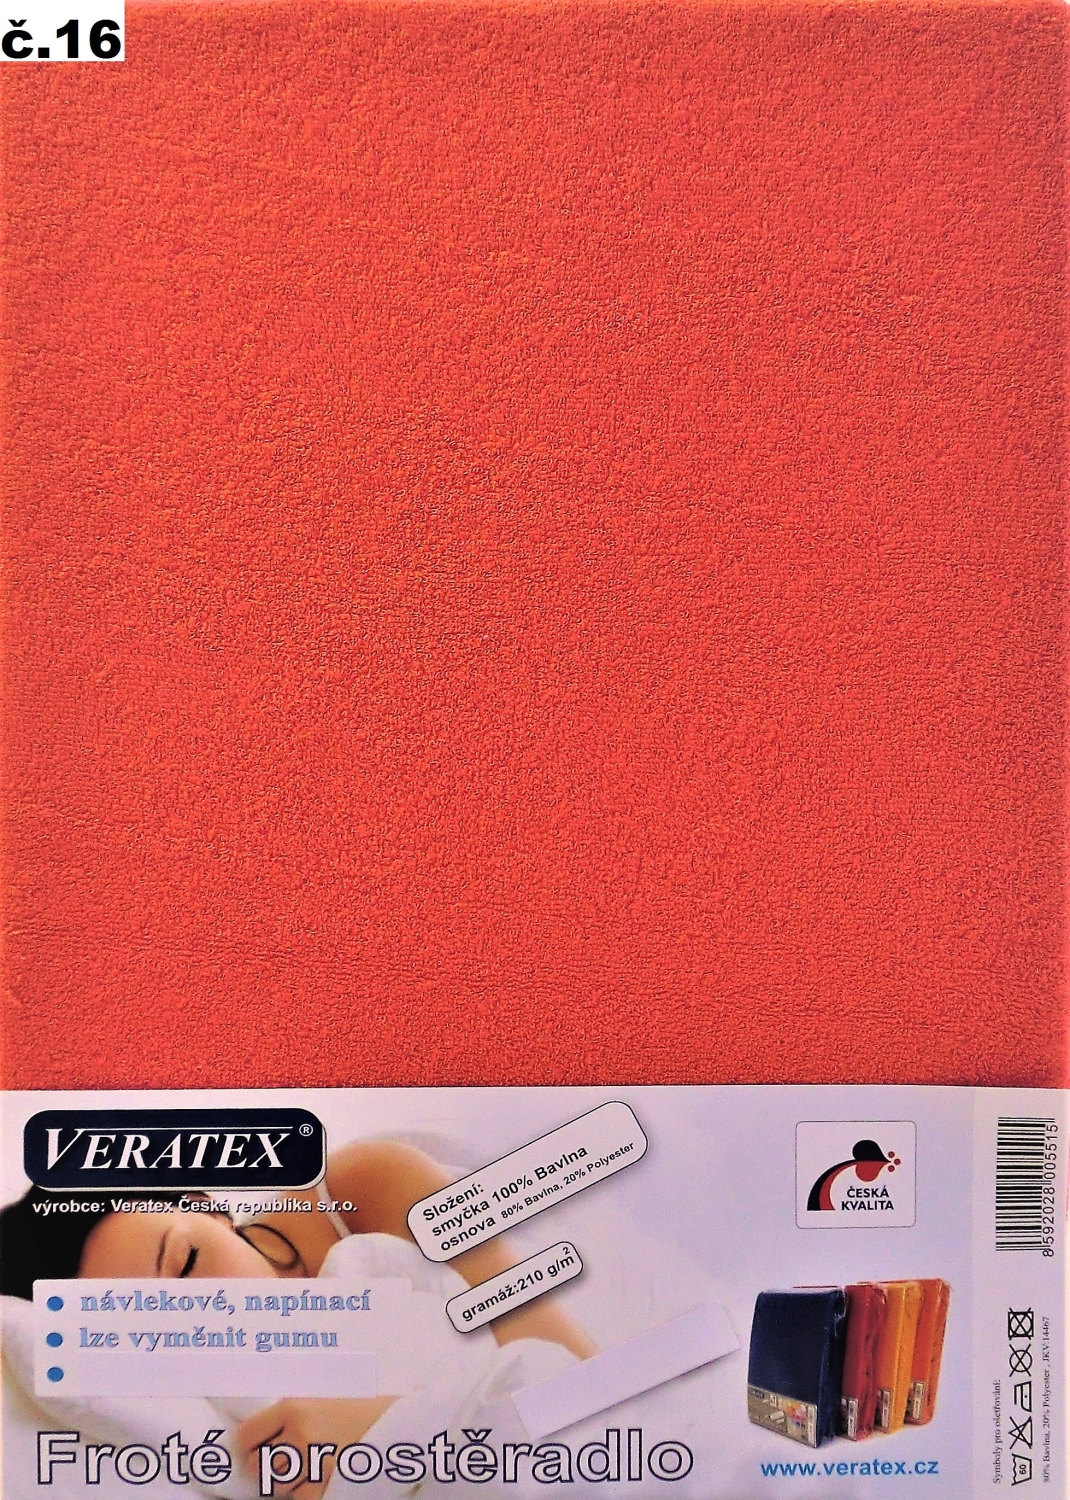 Veratex Froté prostěradlo 90x220/16 cm (č.16 malina)